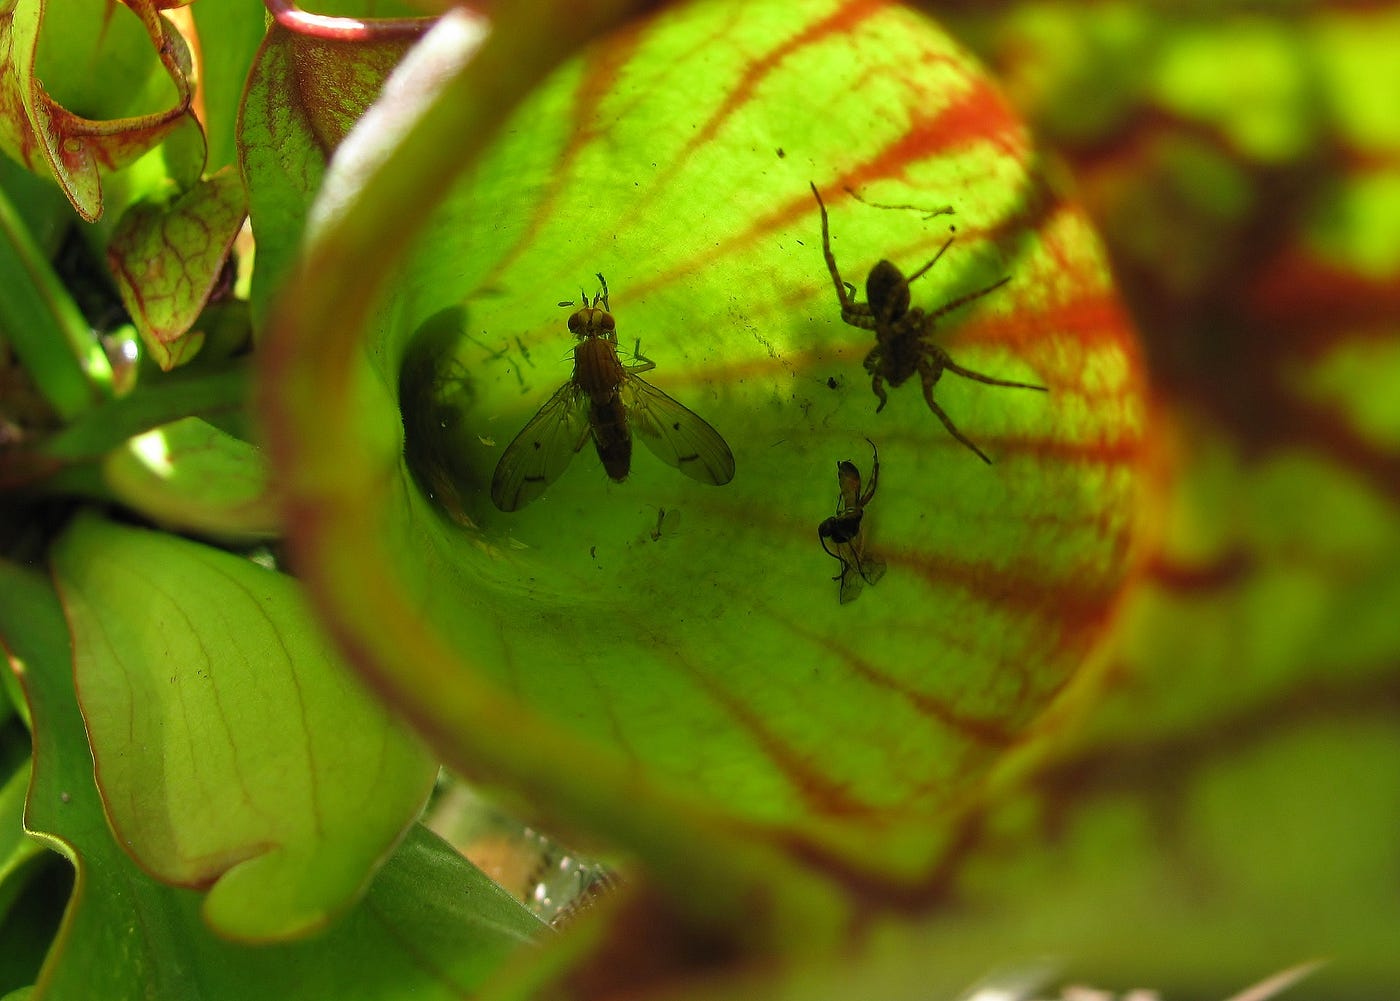 Venus flytrap, Description, Mechanism, Adaptations, Habitat, Diet, & Facts